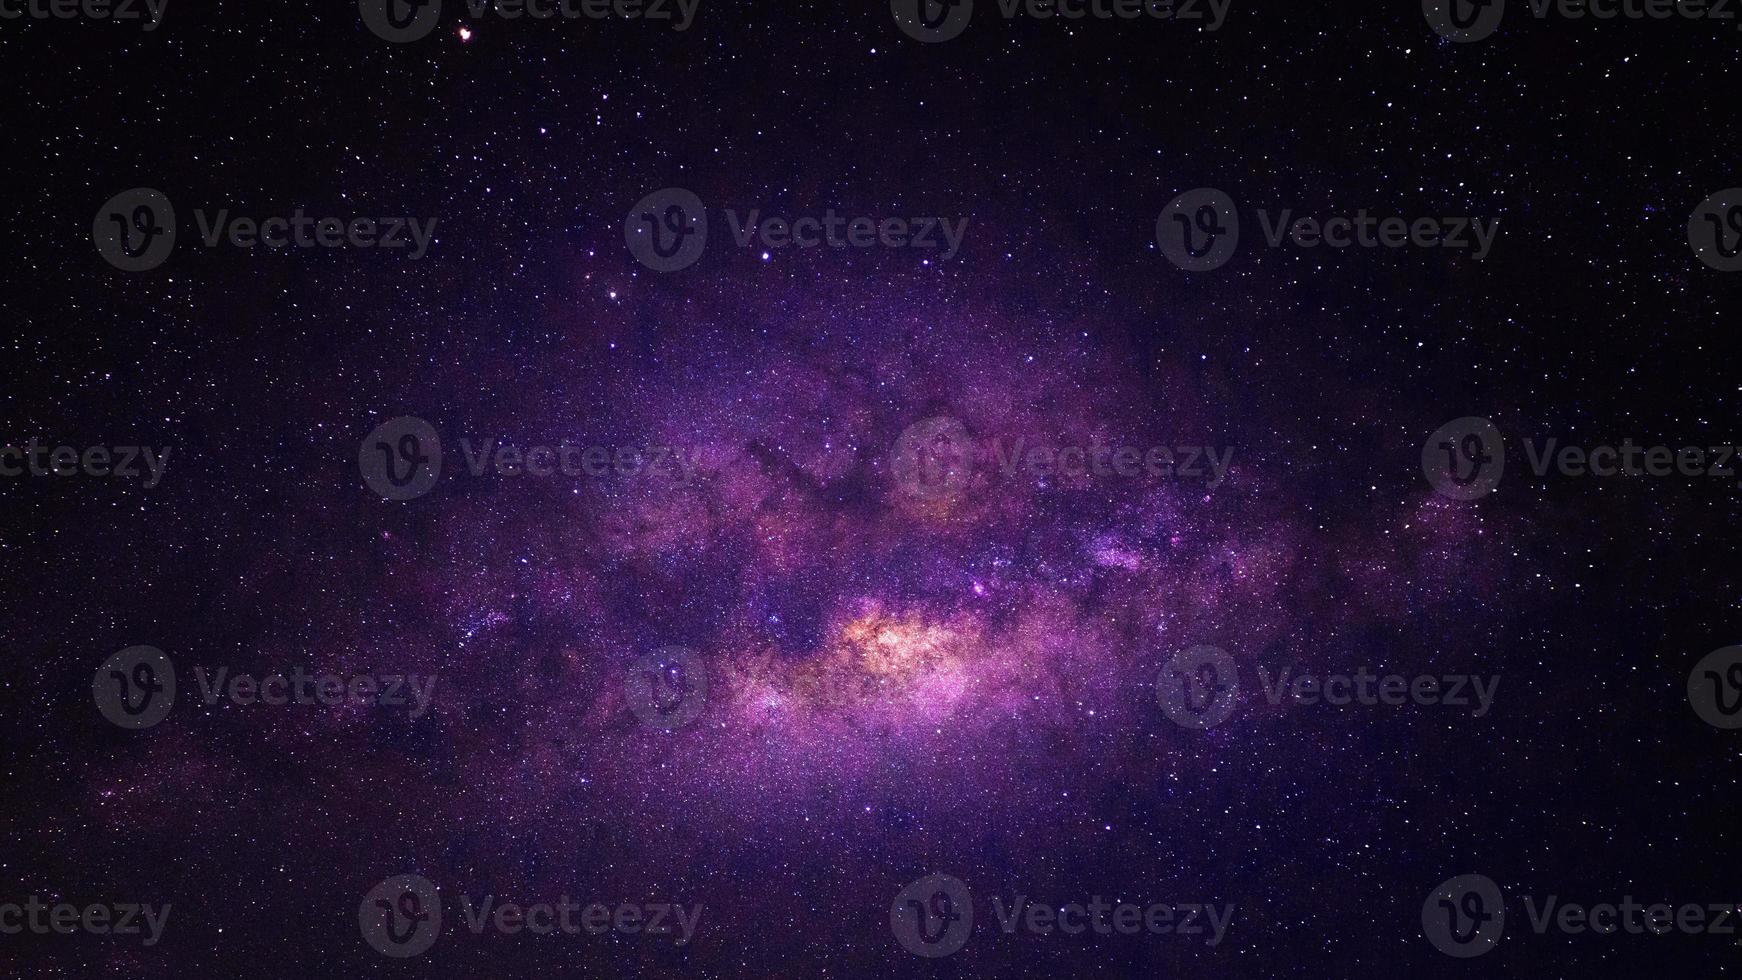 lila dramatisk galax nattpanorama från månuniversums rymden på natthimlen foto